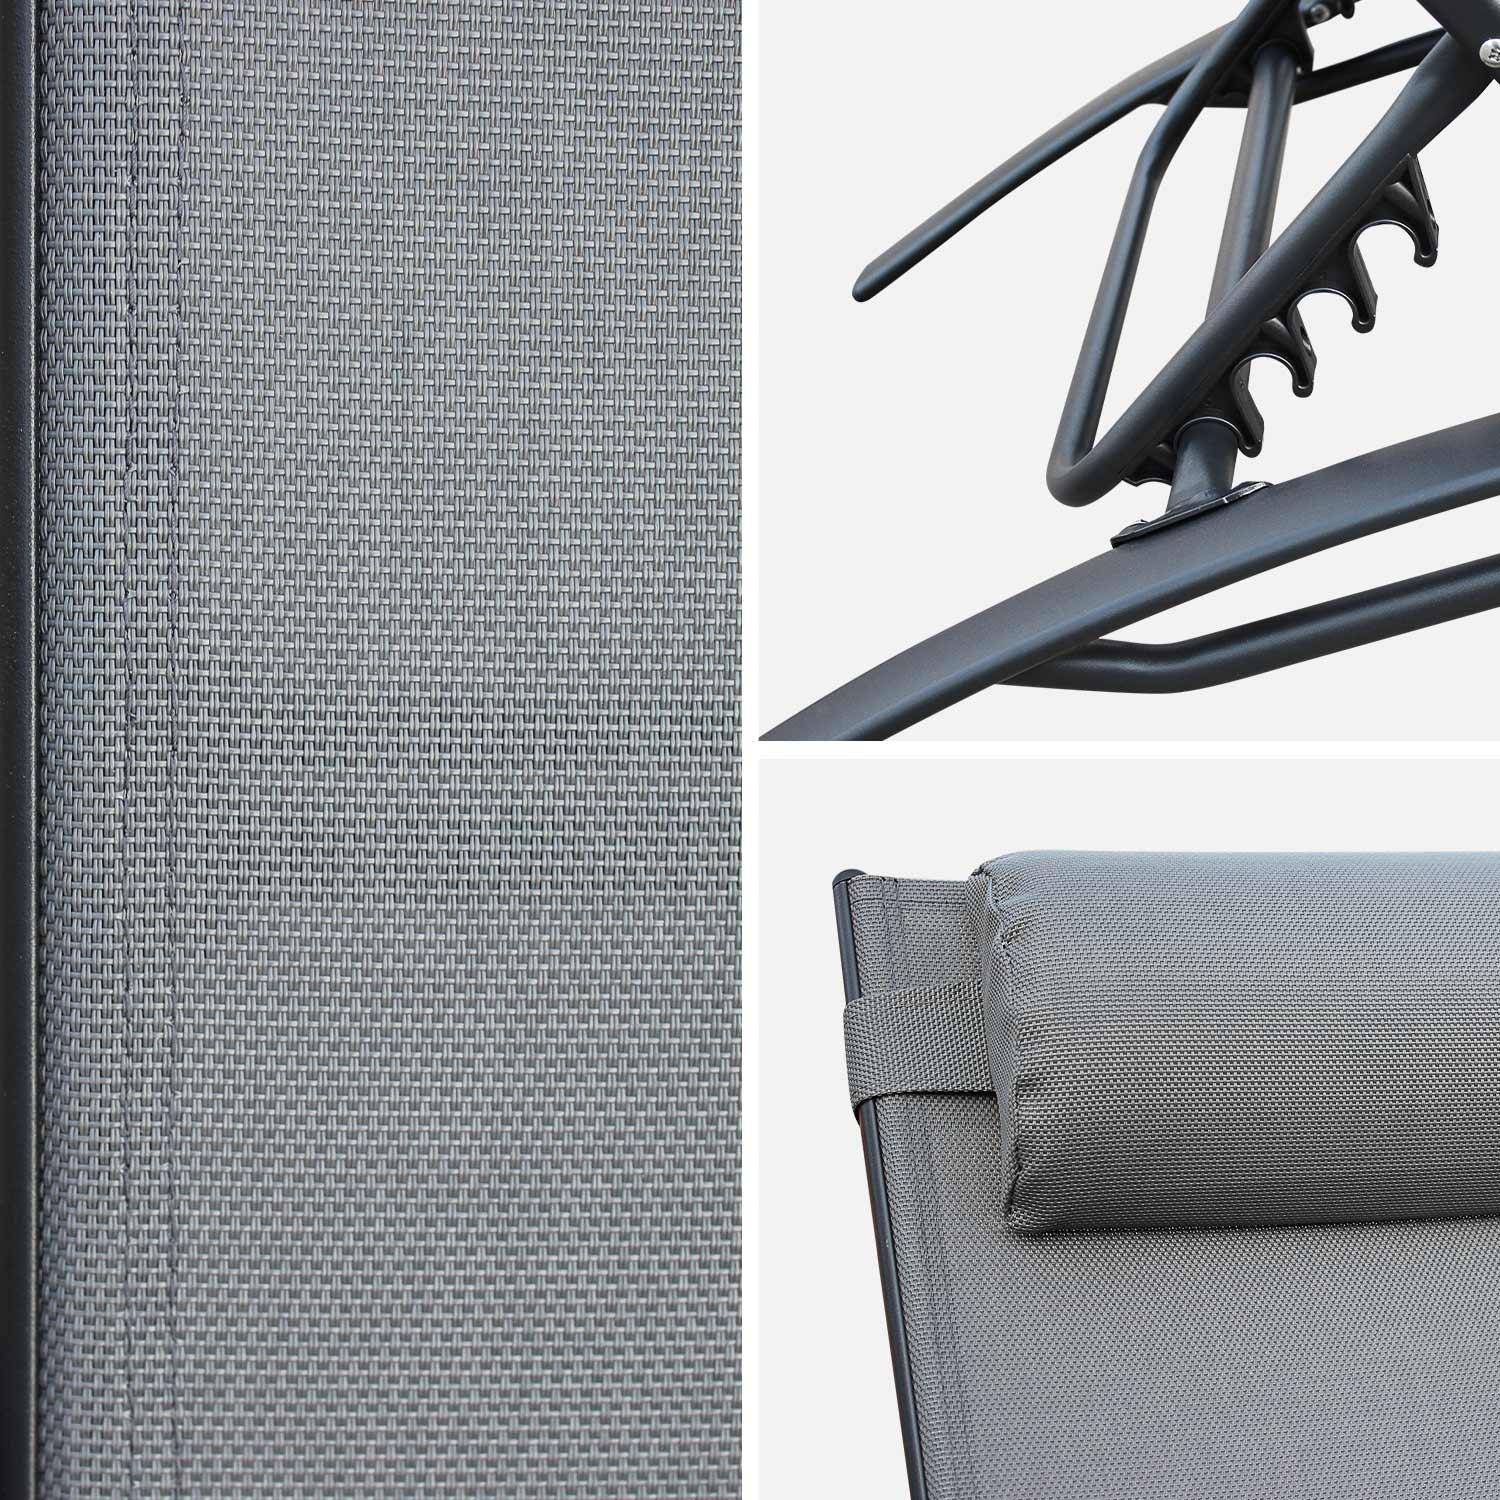 Lettino prendisole in alluminio e textilene - modello: Louisa, colore: Antracite- sdraio Photo3